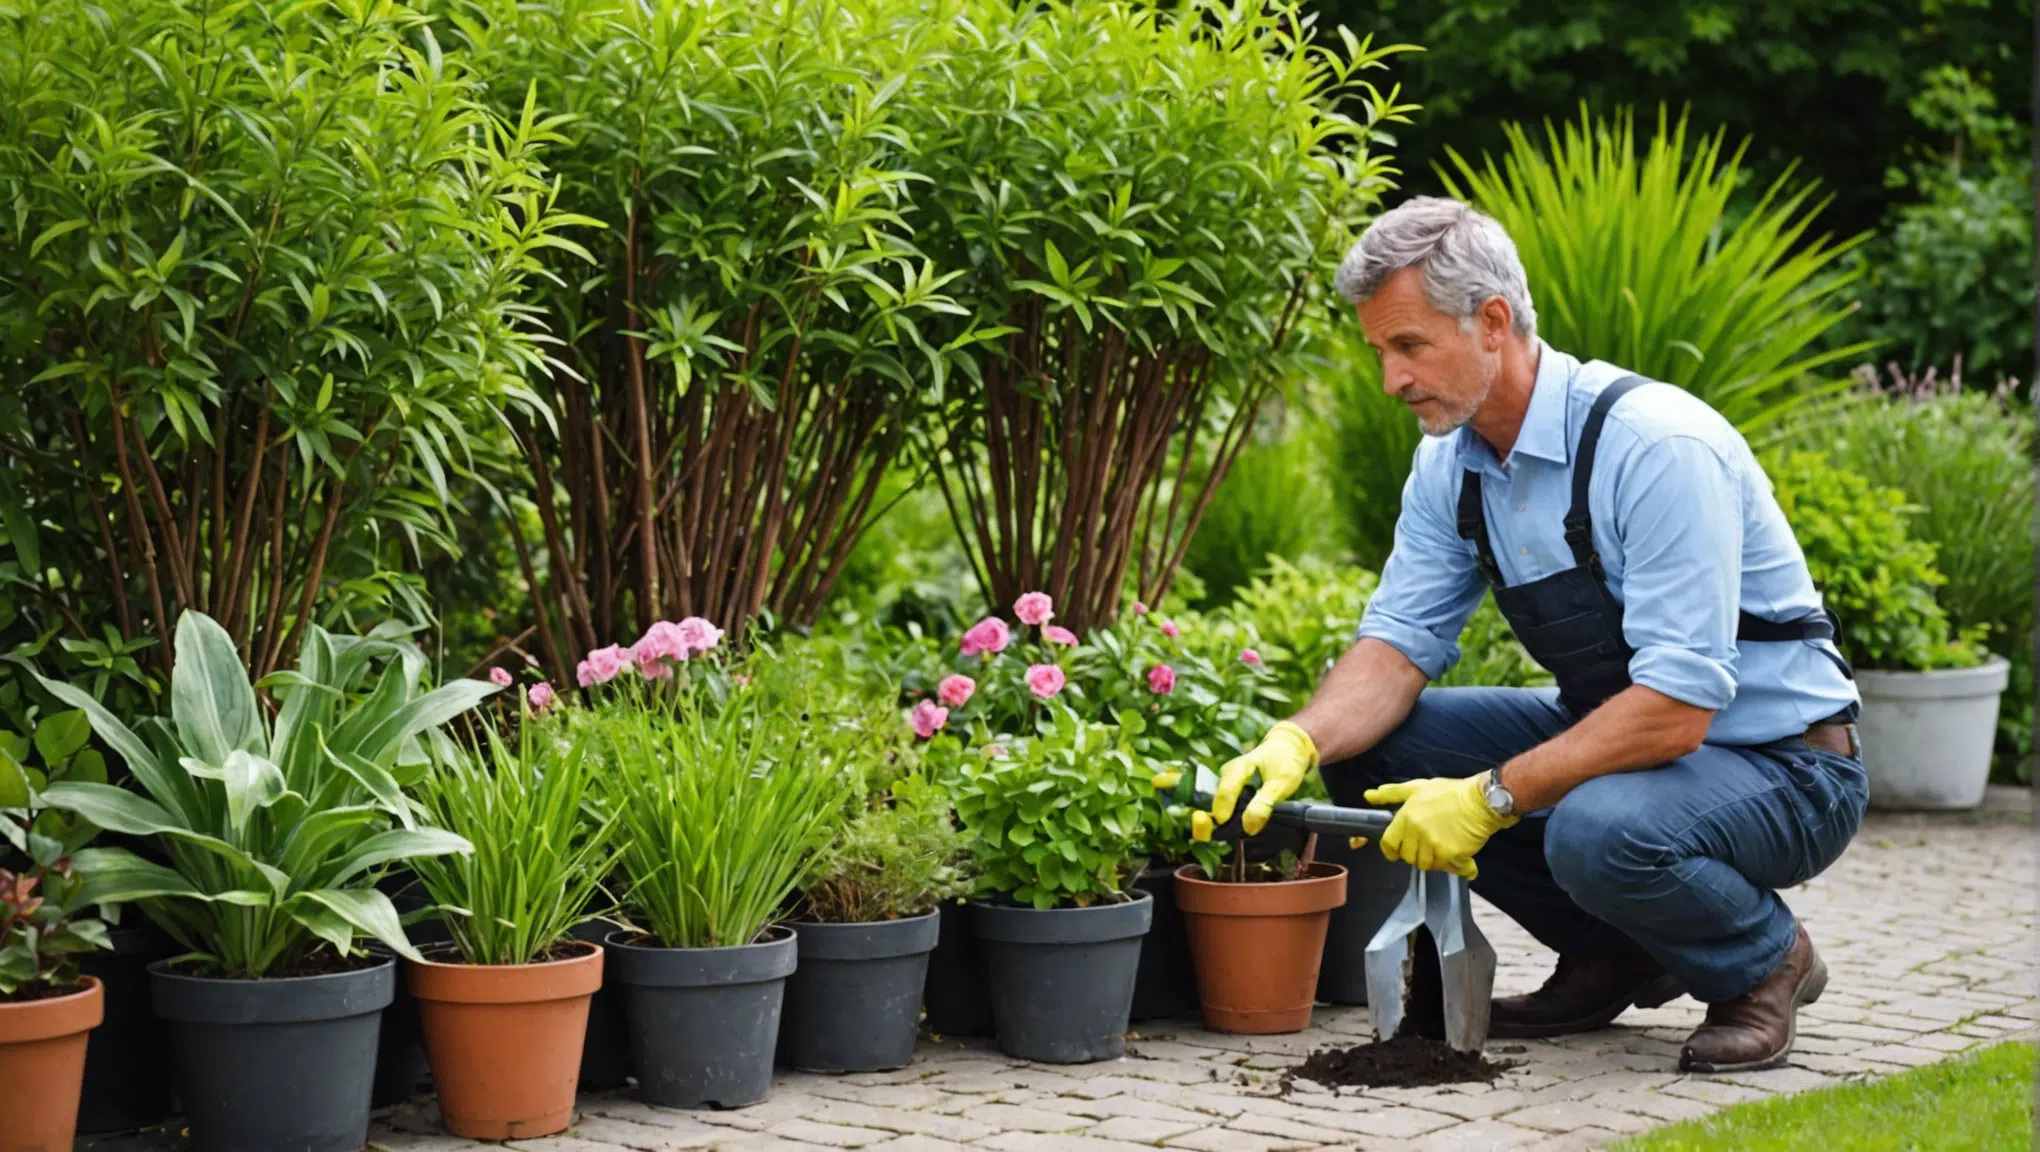 découvrez pourquoi les experts du jardinage insistent sur l'importance de suivre ces astuces incontournables pour entretenir votre jardin avec succès.